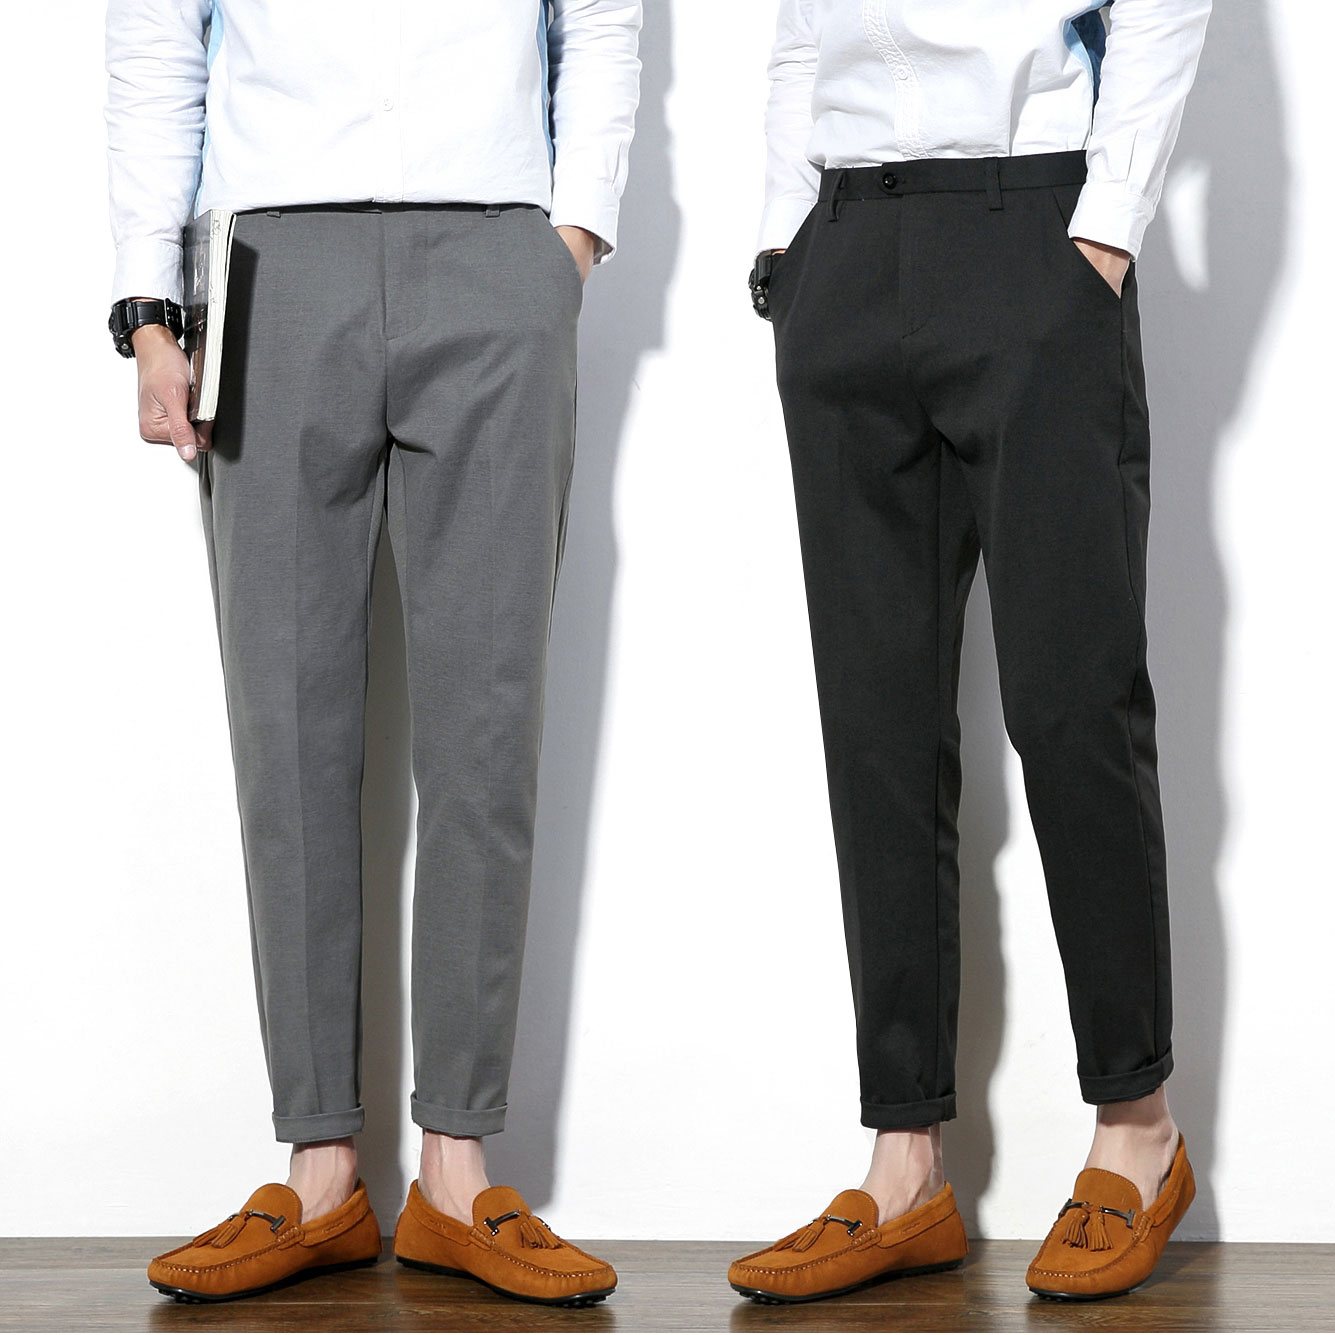 Мужские короткие брюки как называются – укороченные мужские брюки — это дань моде или безвкусица? | актуальные вопросы | вопрос-ответ